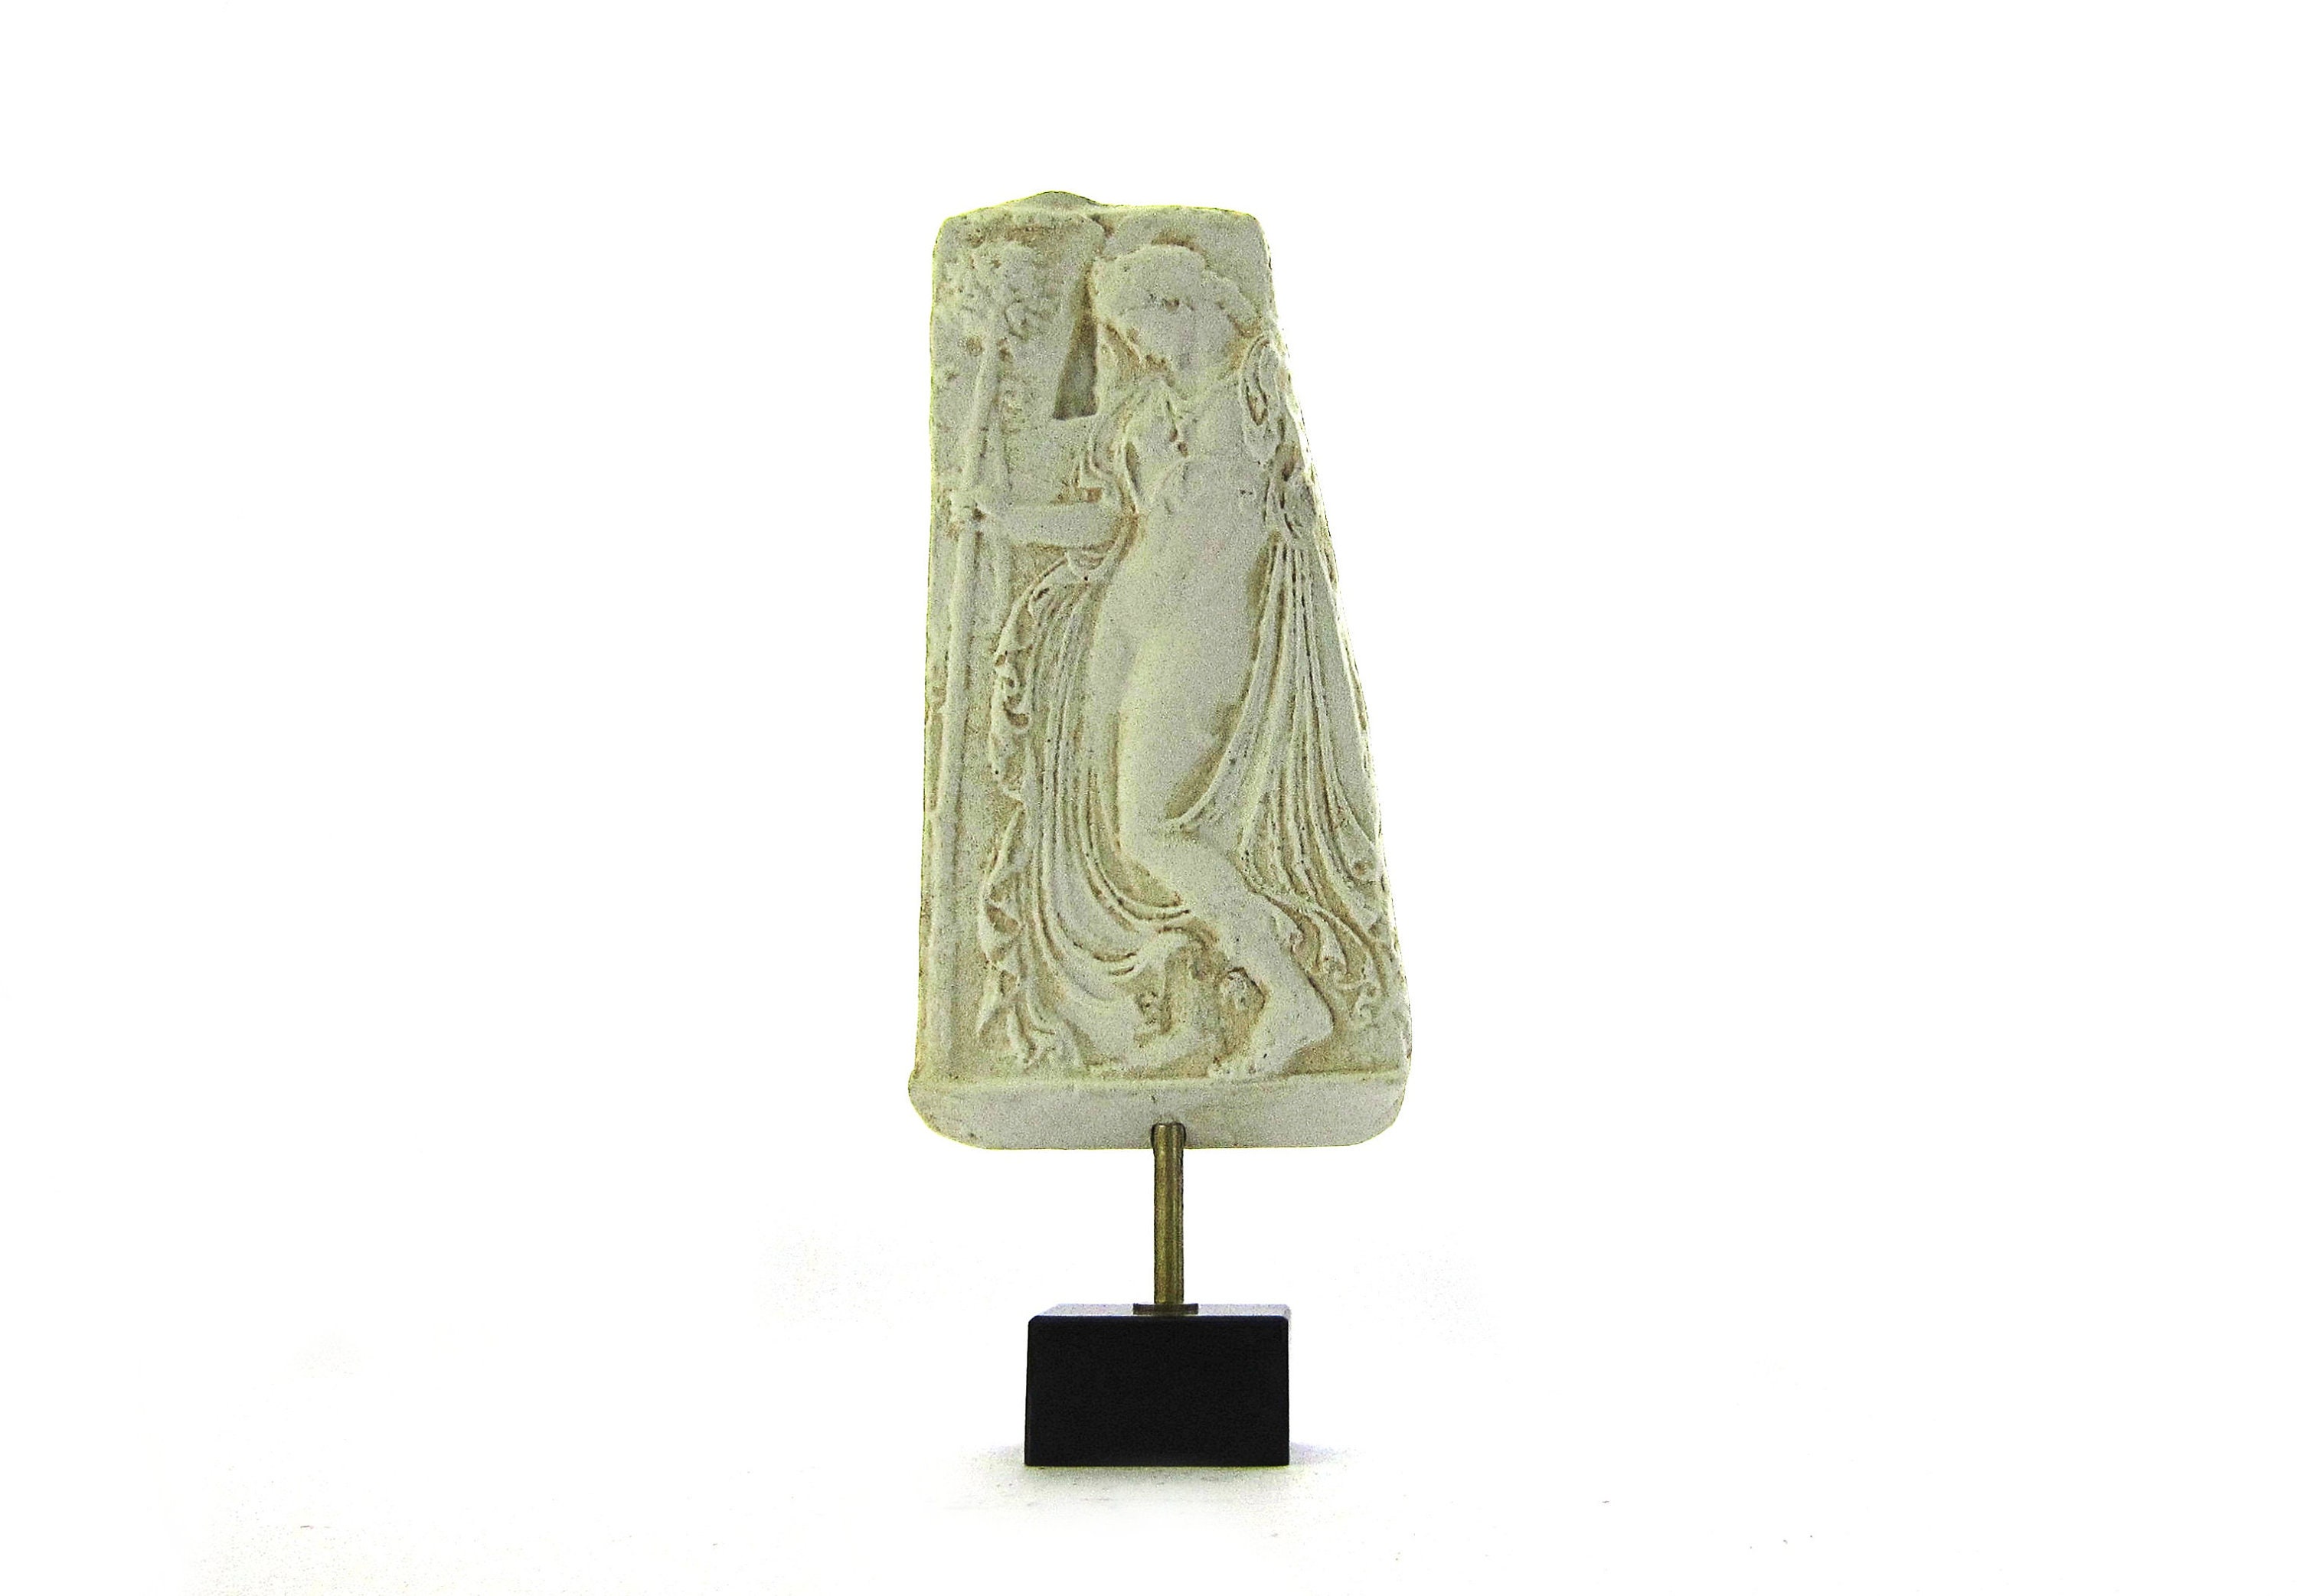 Follower of Dionysos: Maenad Sticker for Sale by archaeologyart